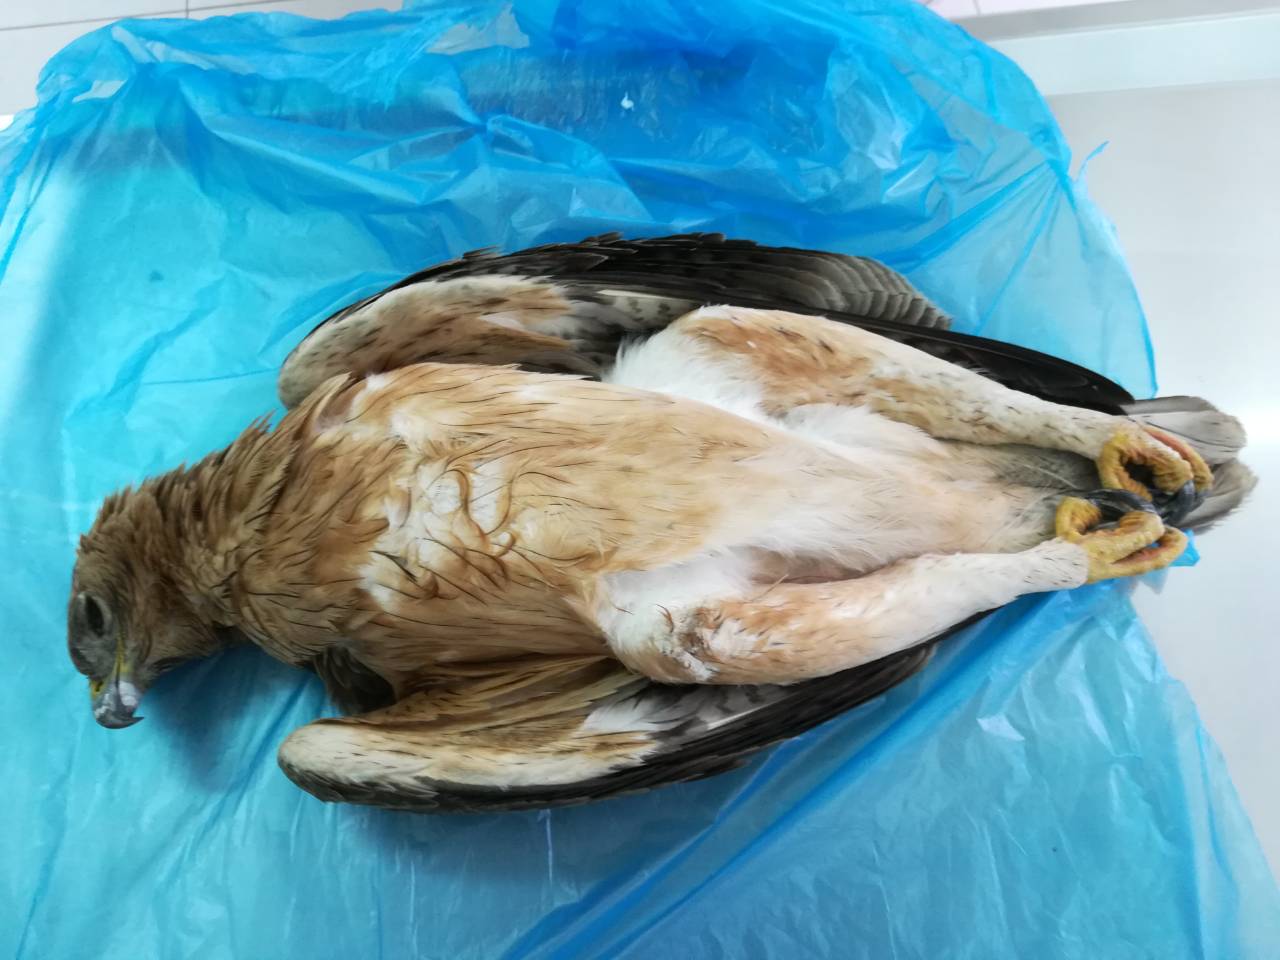 ΛΑΡΝΑΚΑ: Δηλητηριάζουν άγρια πτηνά – Κρούει τον κώδωνα η Υπηρεσία Θήρας και Πανίδας